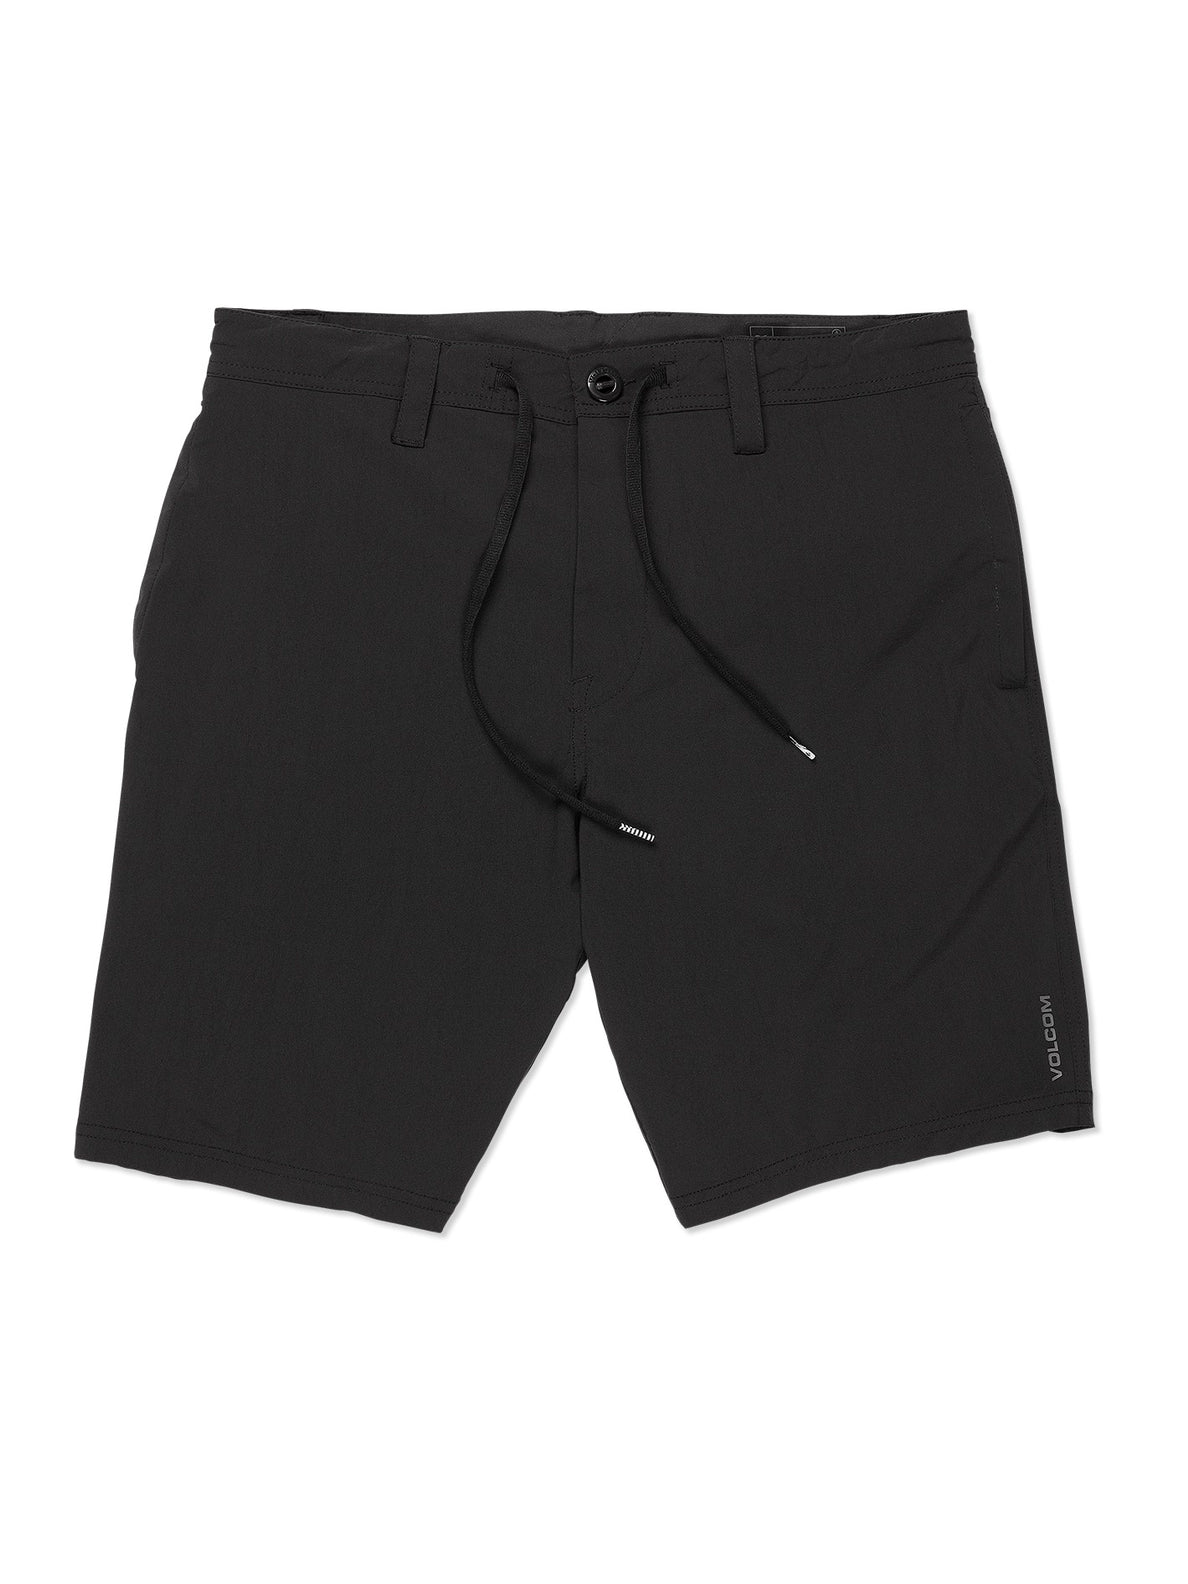 Voltripper Hybrid Shorts - Black